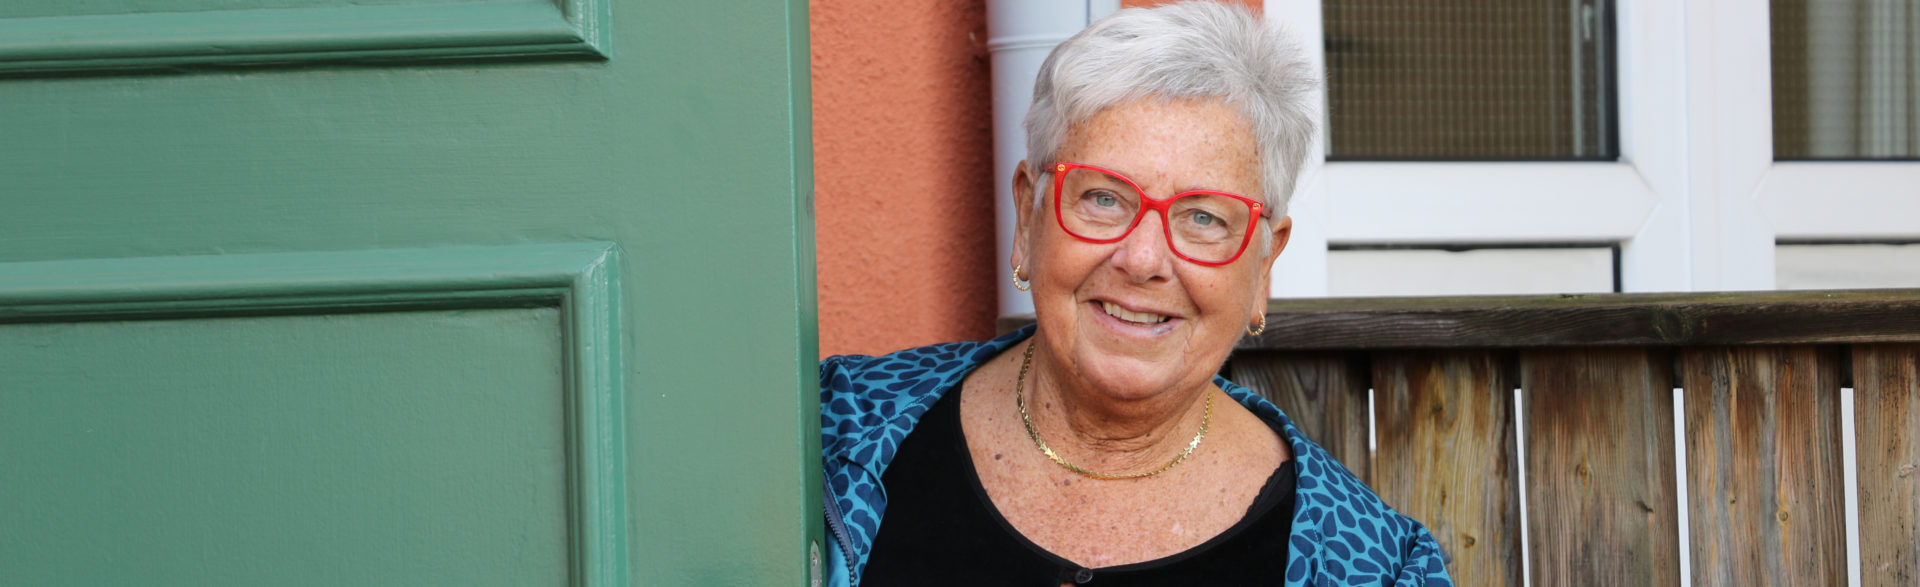 En gråhårig kvinna med röda glasögon står vid en grön dörr